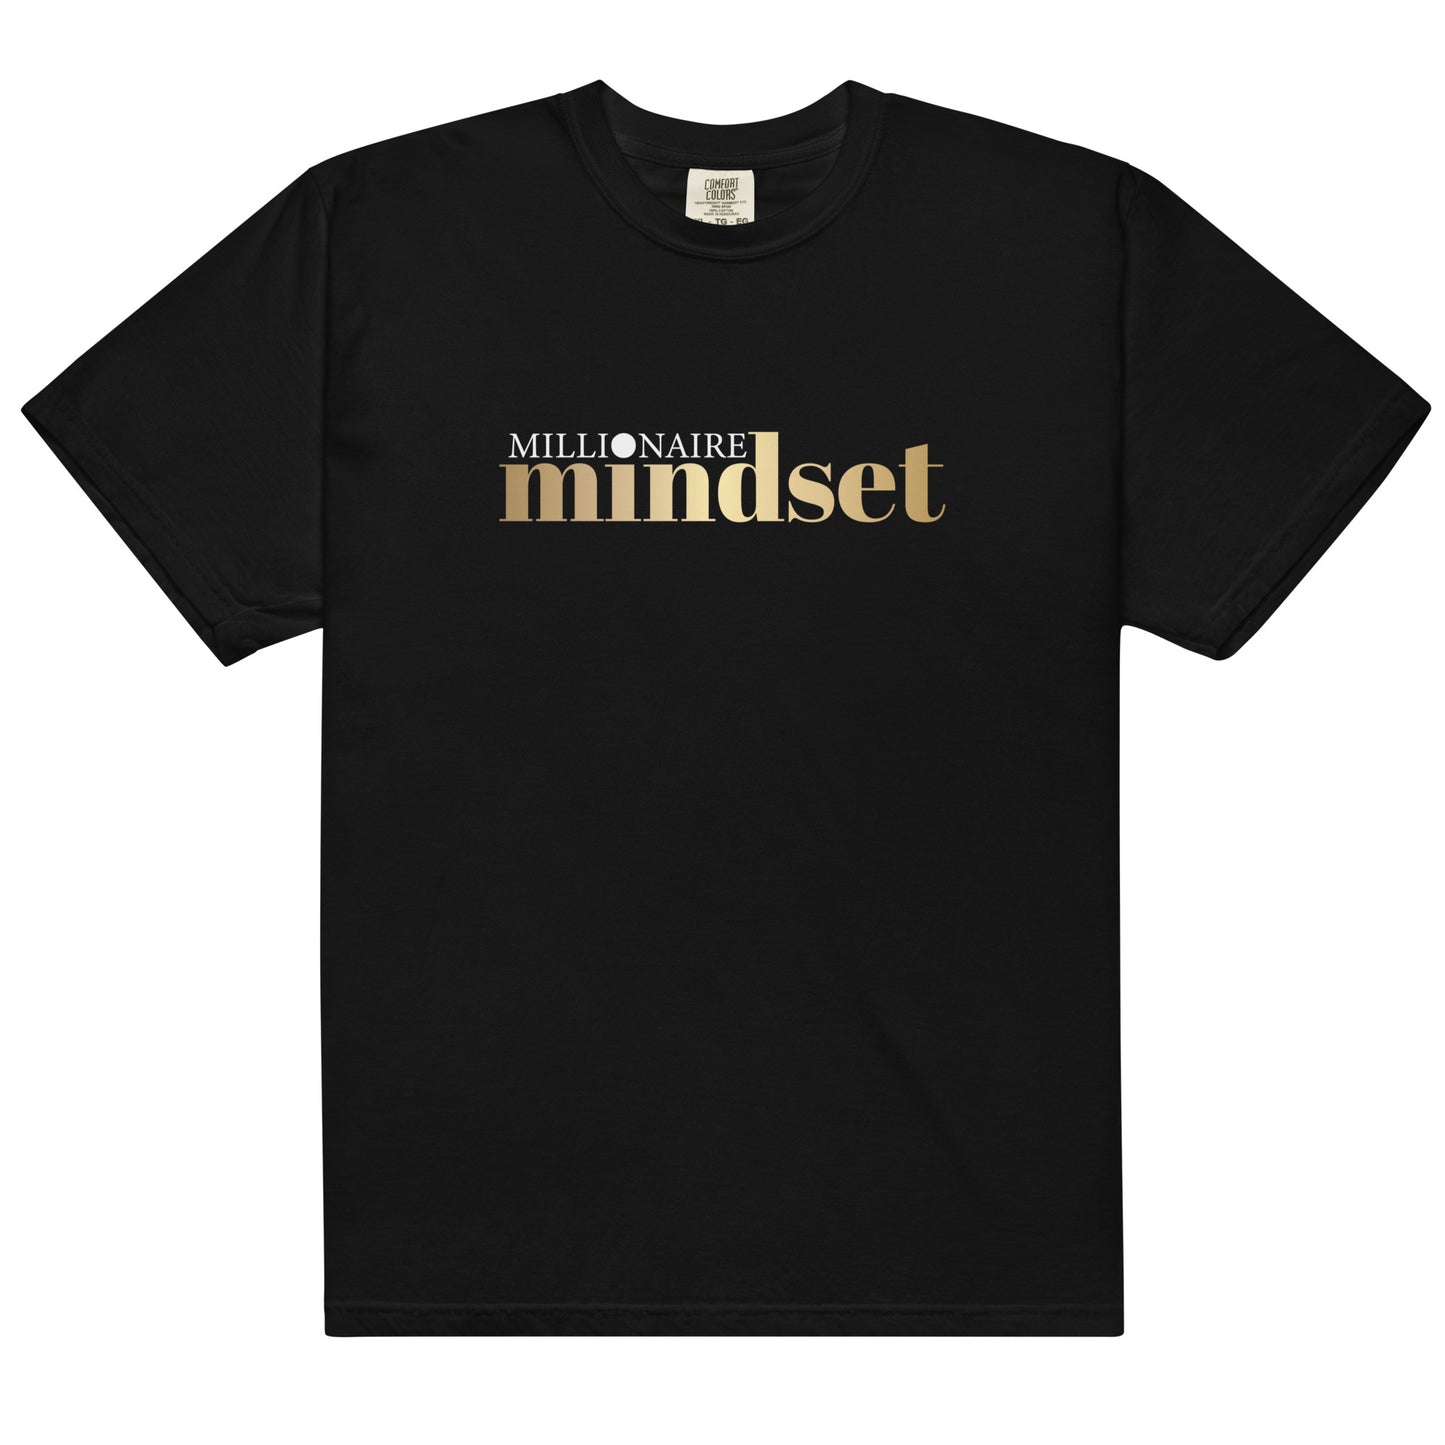 Diamond Mind "Millionaire Mindset" T-Shirt